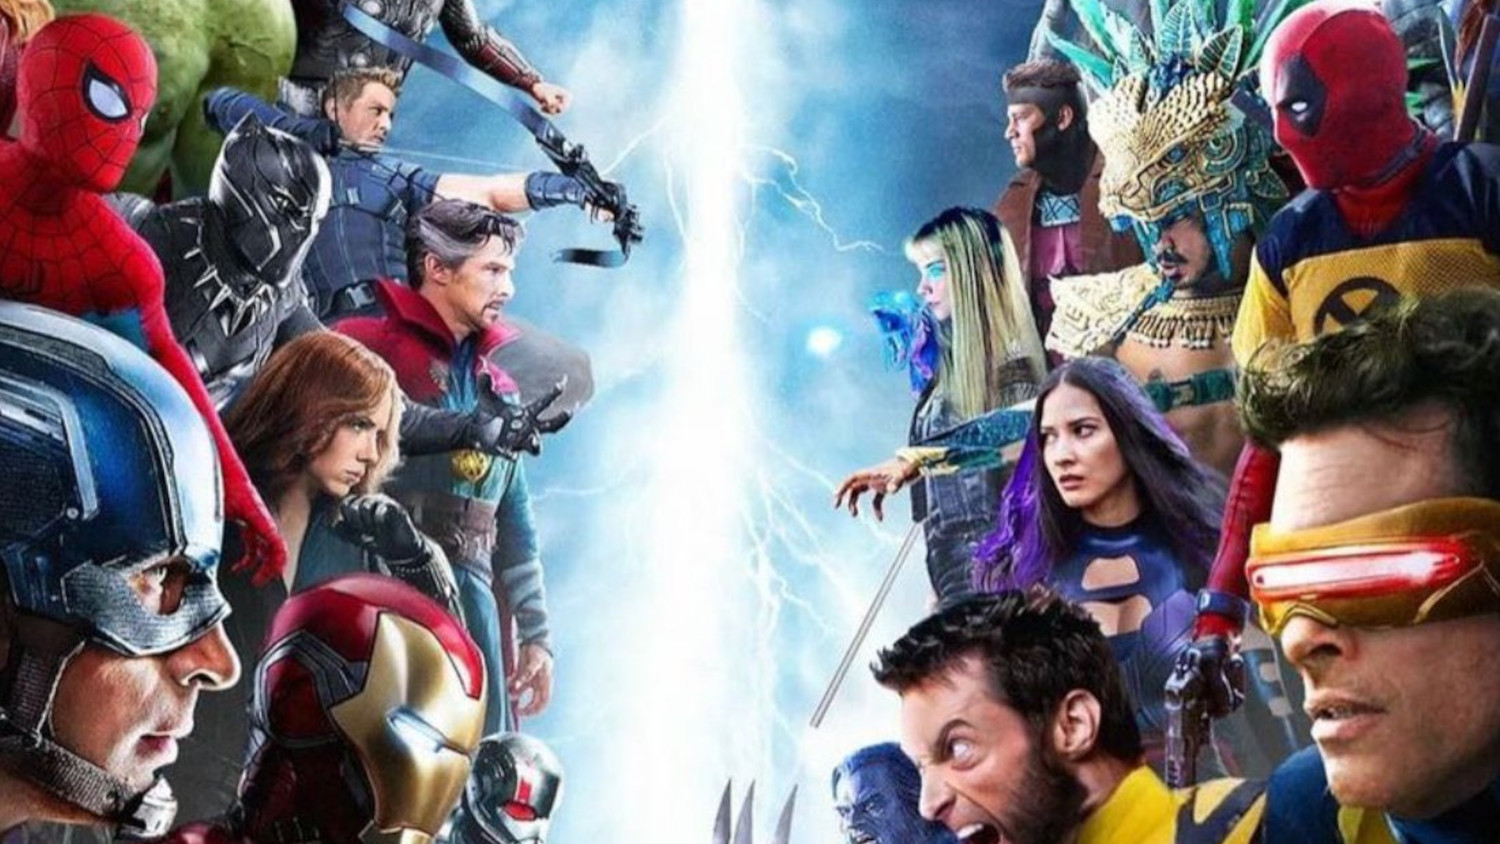 avengers vs x men movie rumors